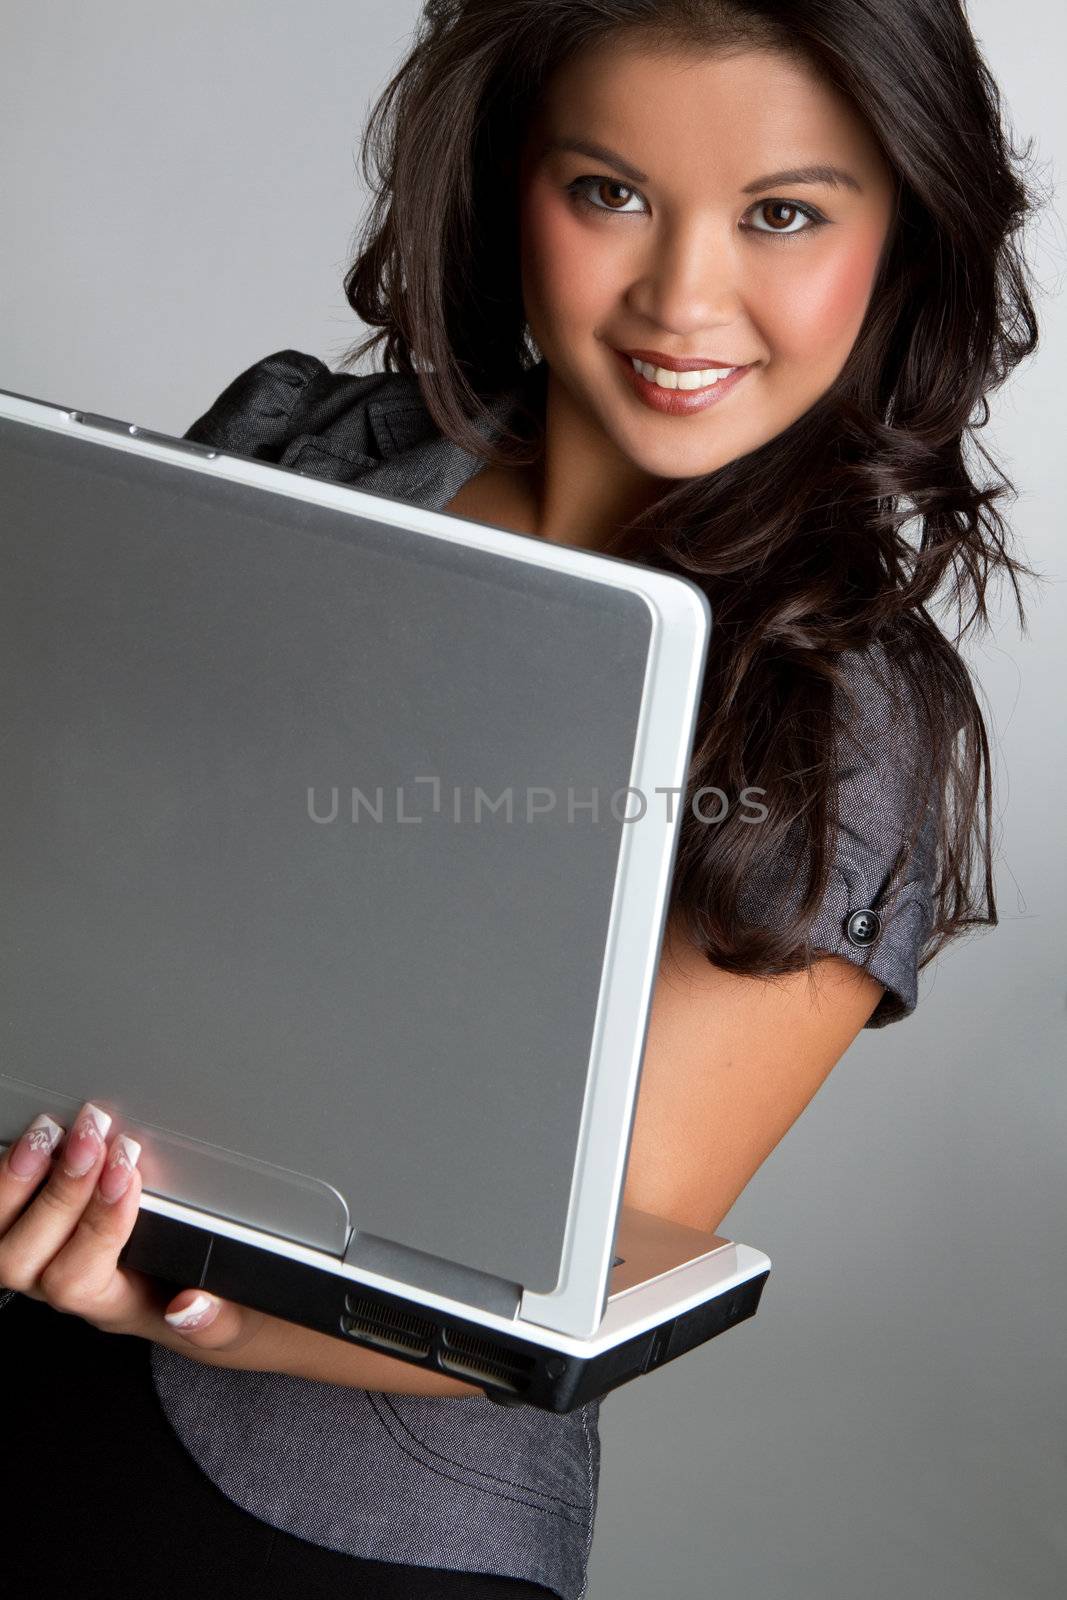 Asian woman using laptop computer